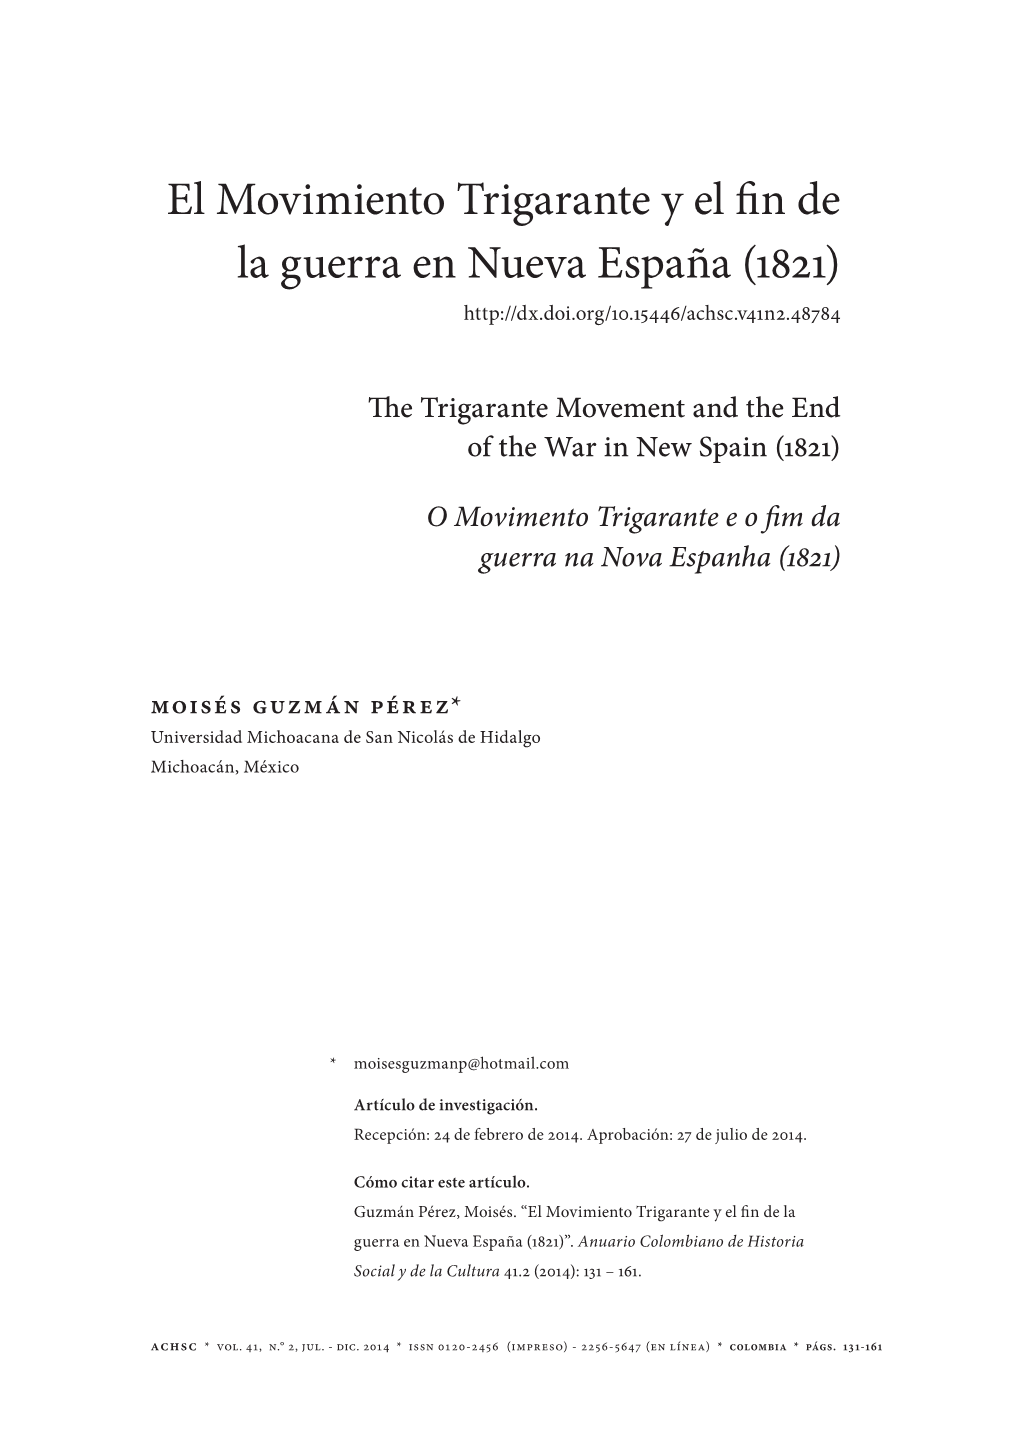 El Movimiento Trigarante Y El Fin De La Guerra En Nueva España (1821)